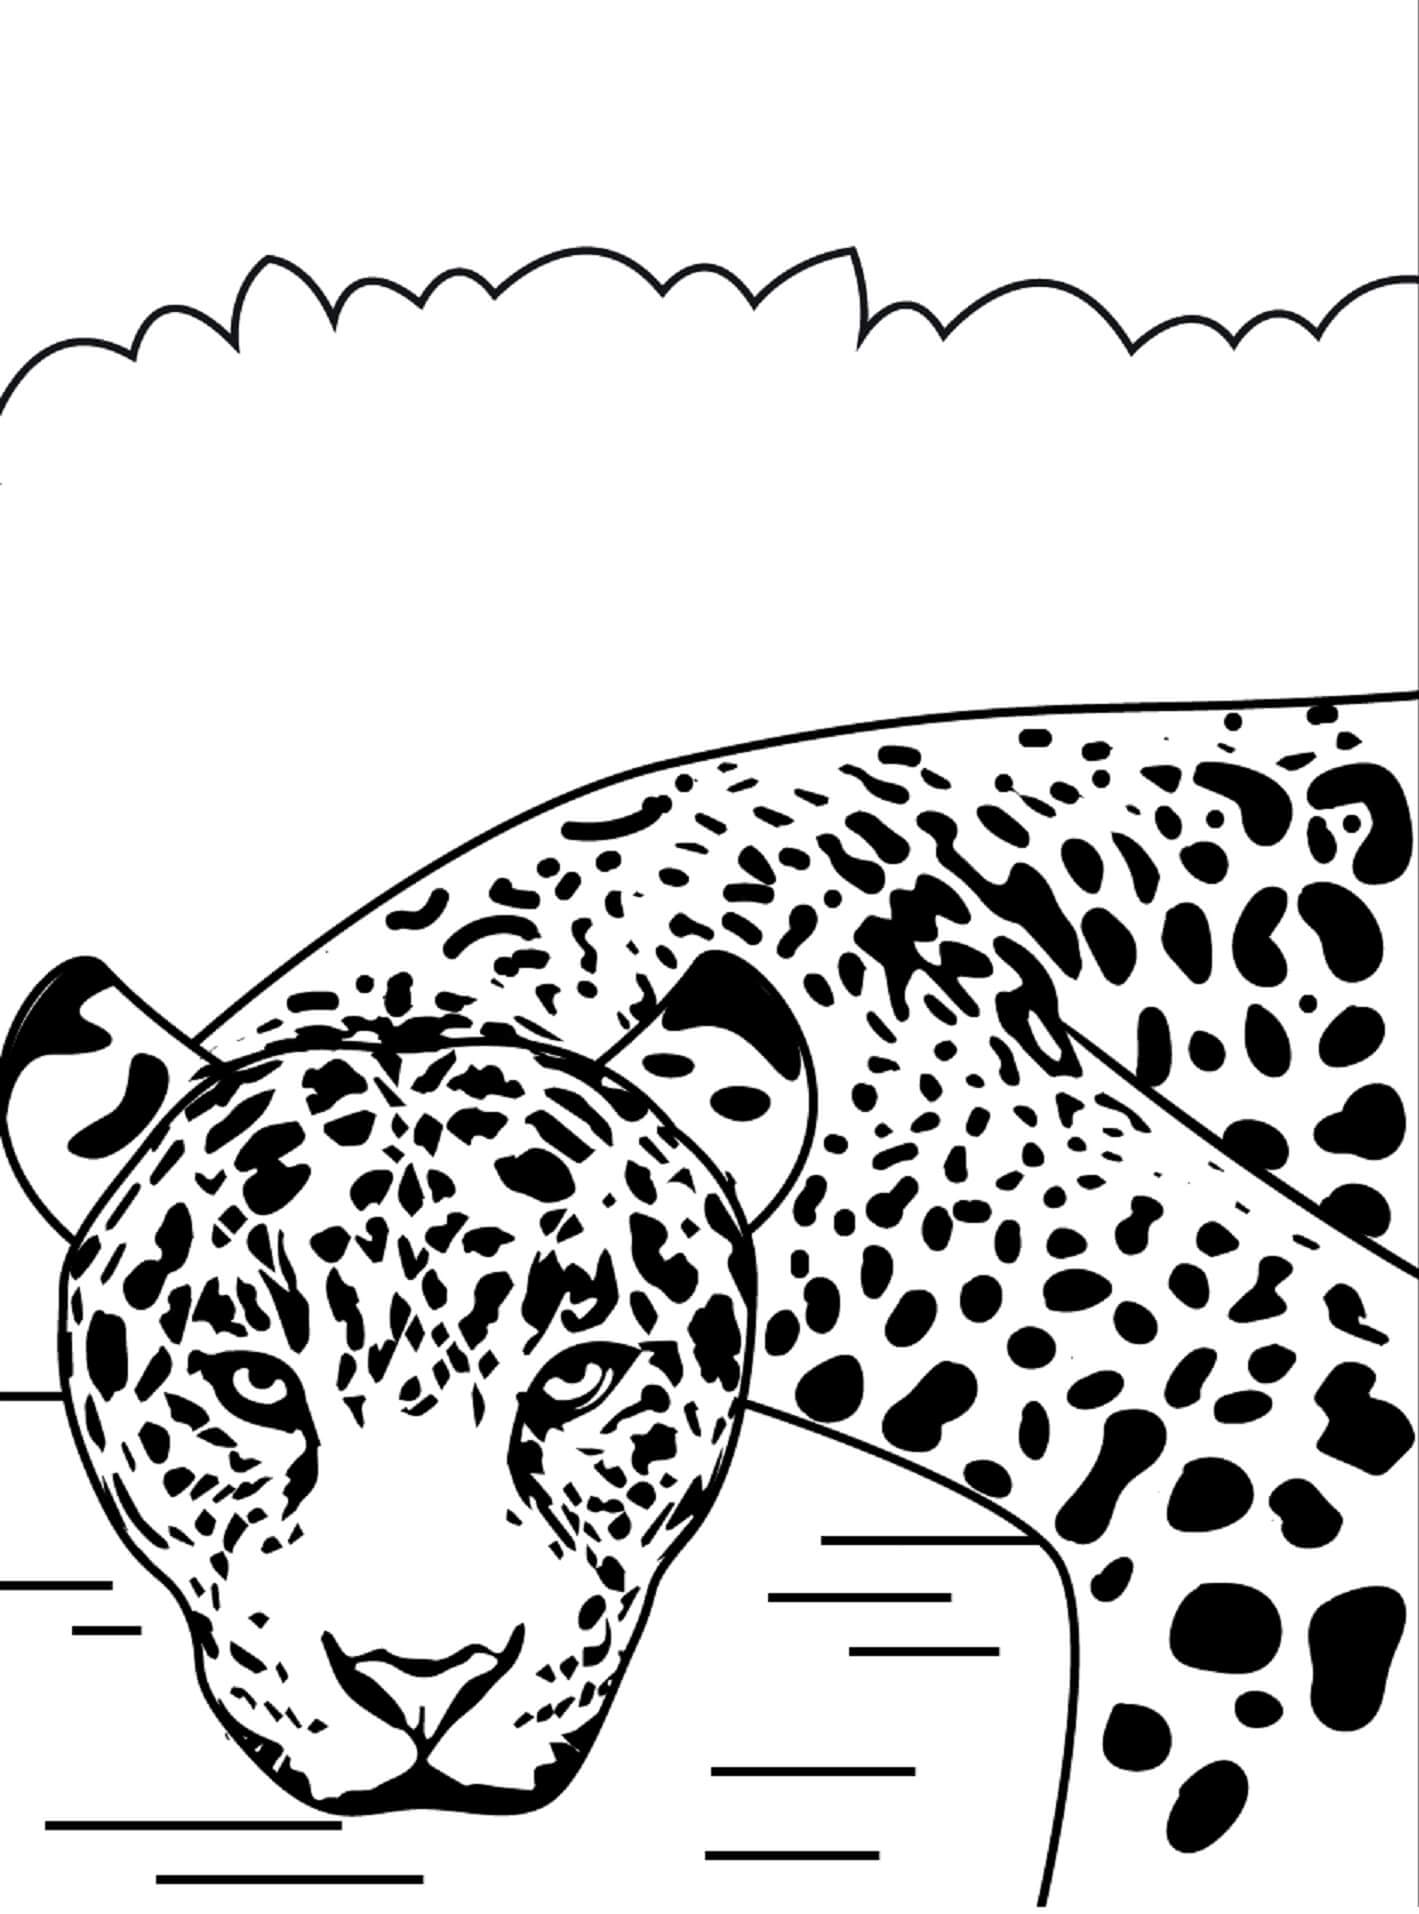 Cara De Jaguar Legal para colorir